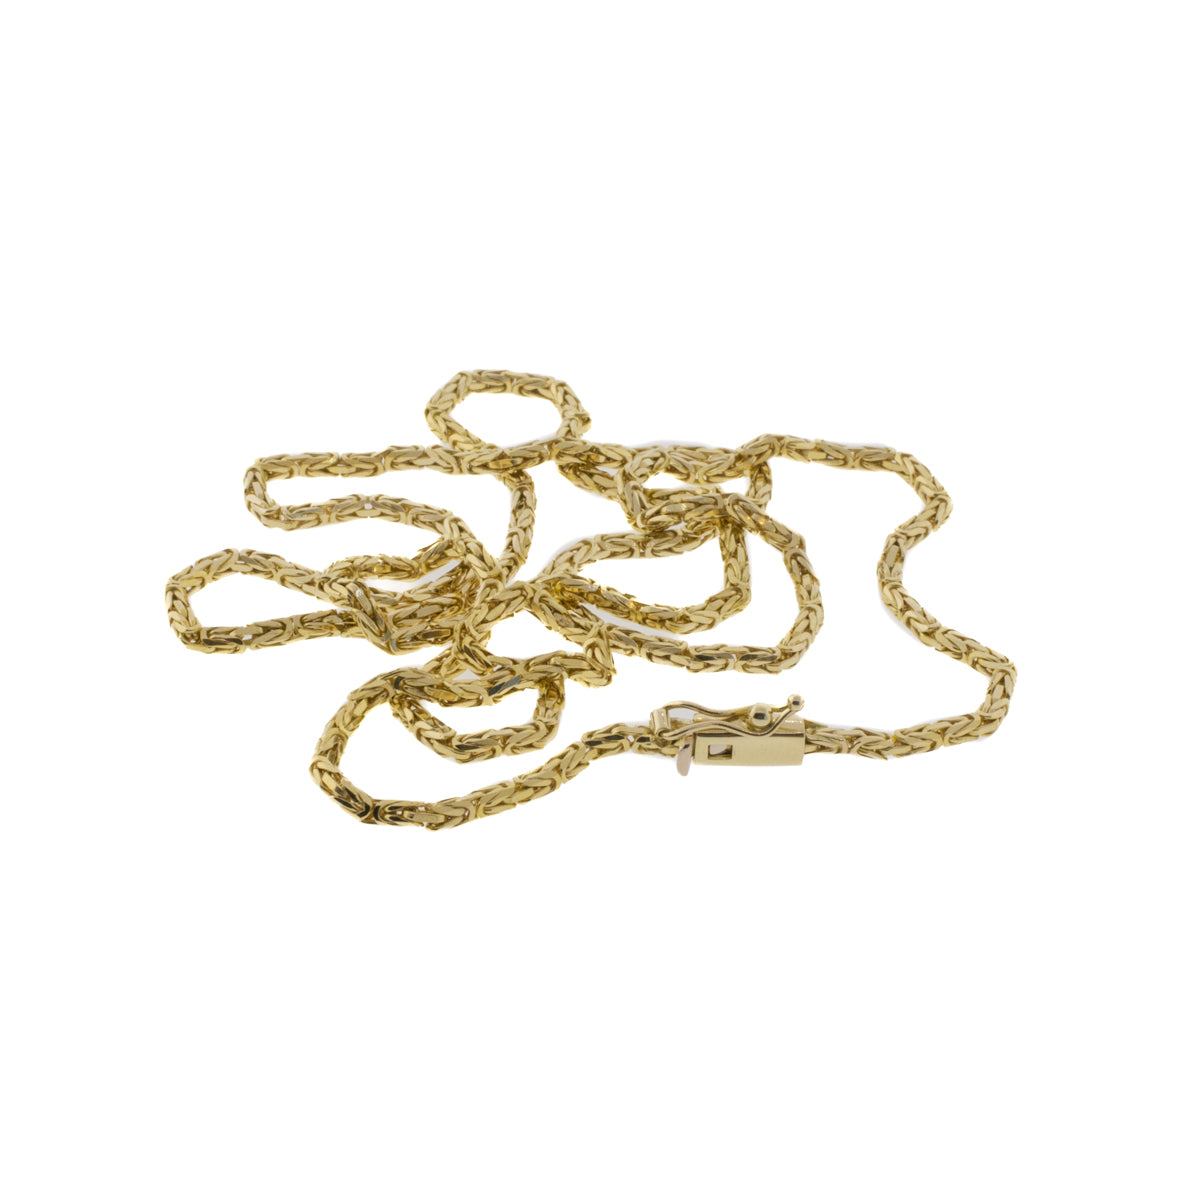 22" Byzantine Necklace